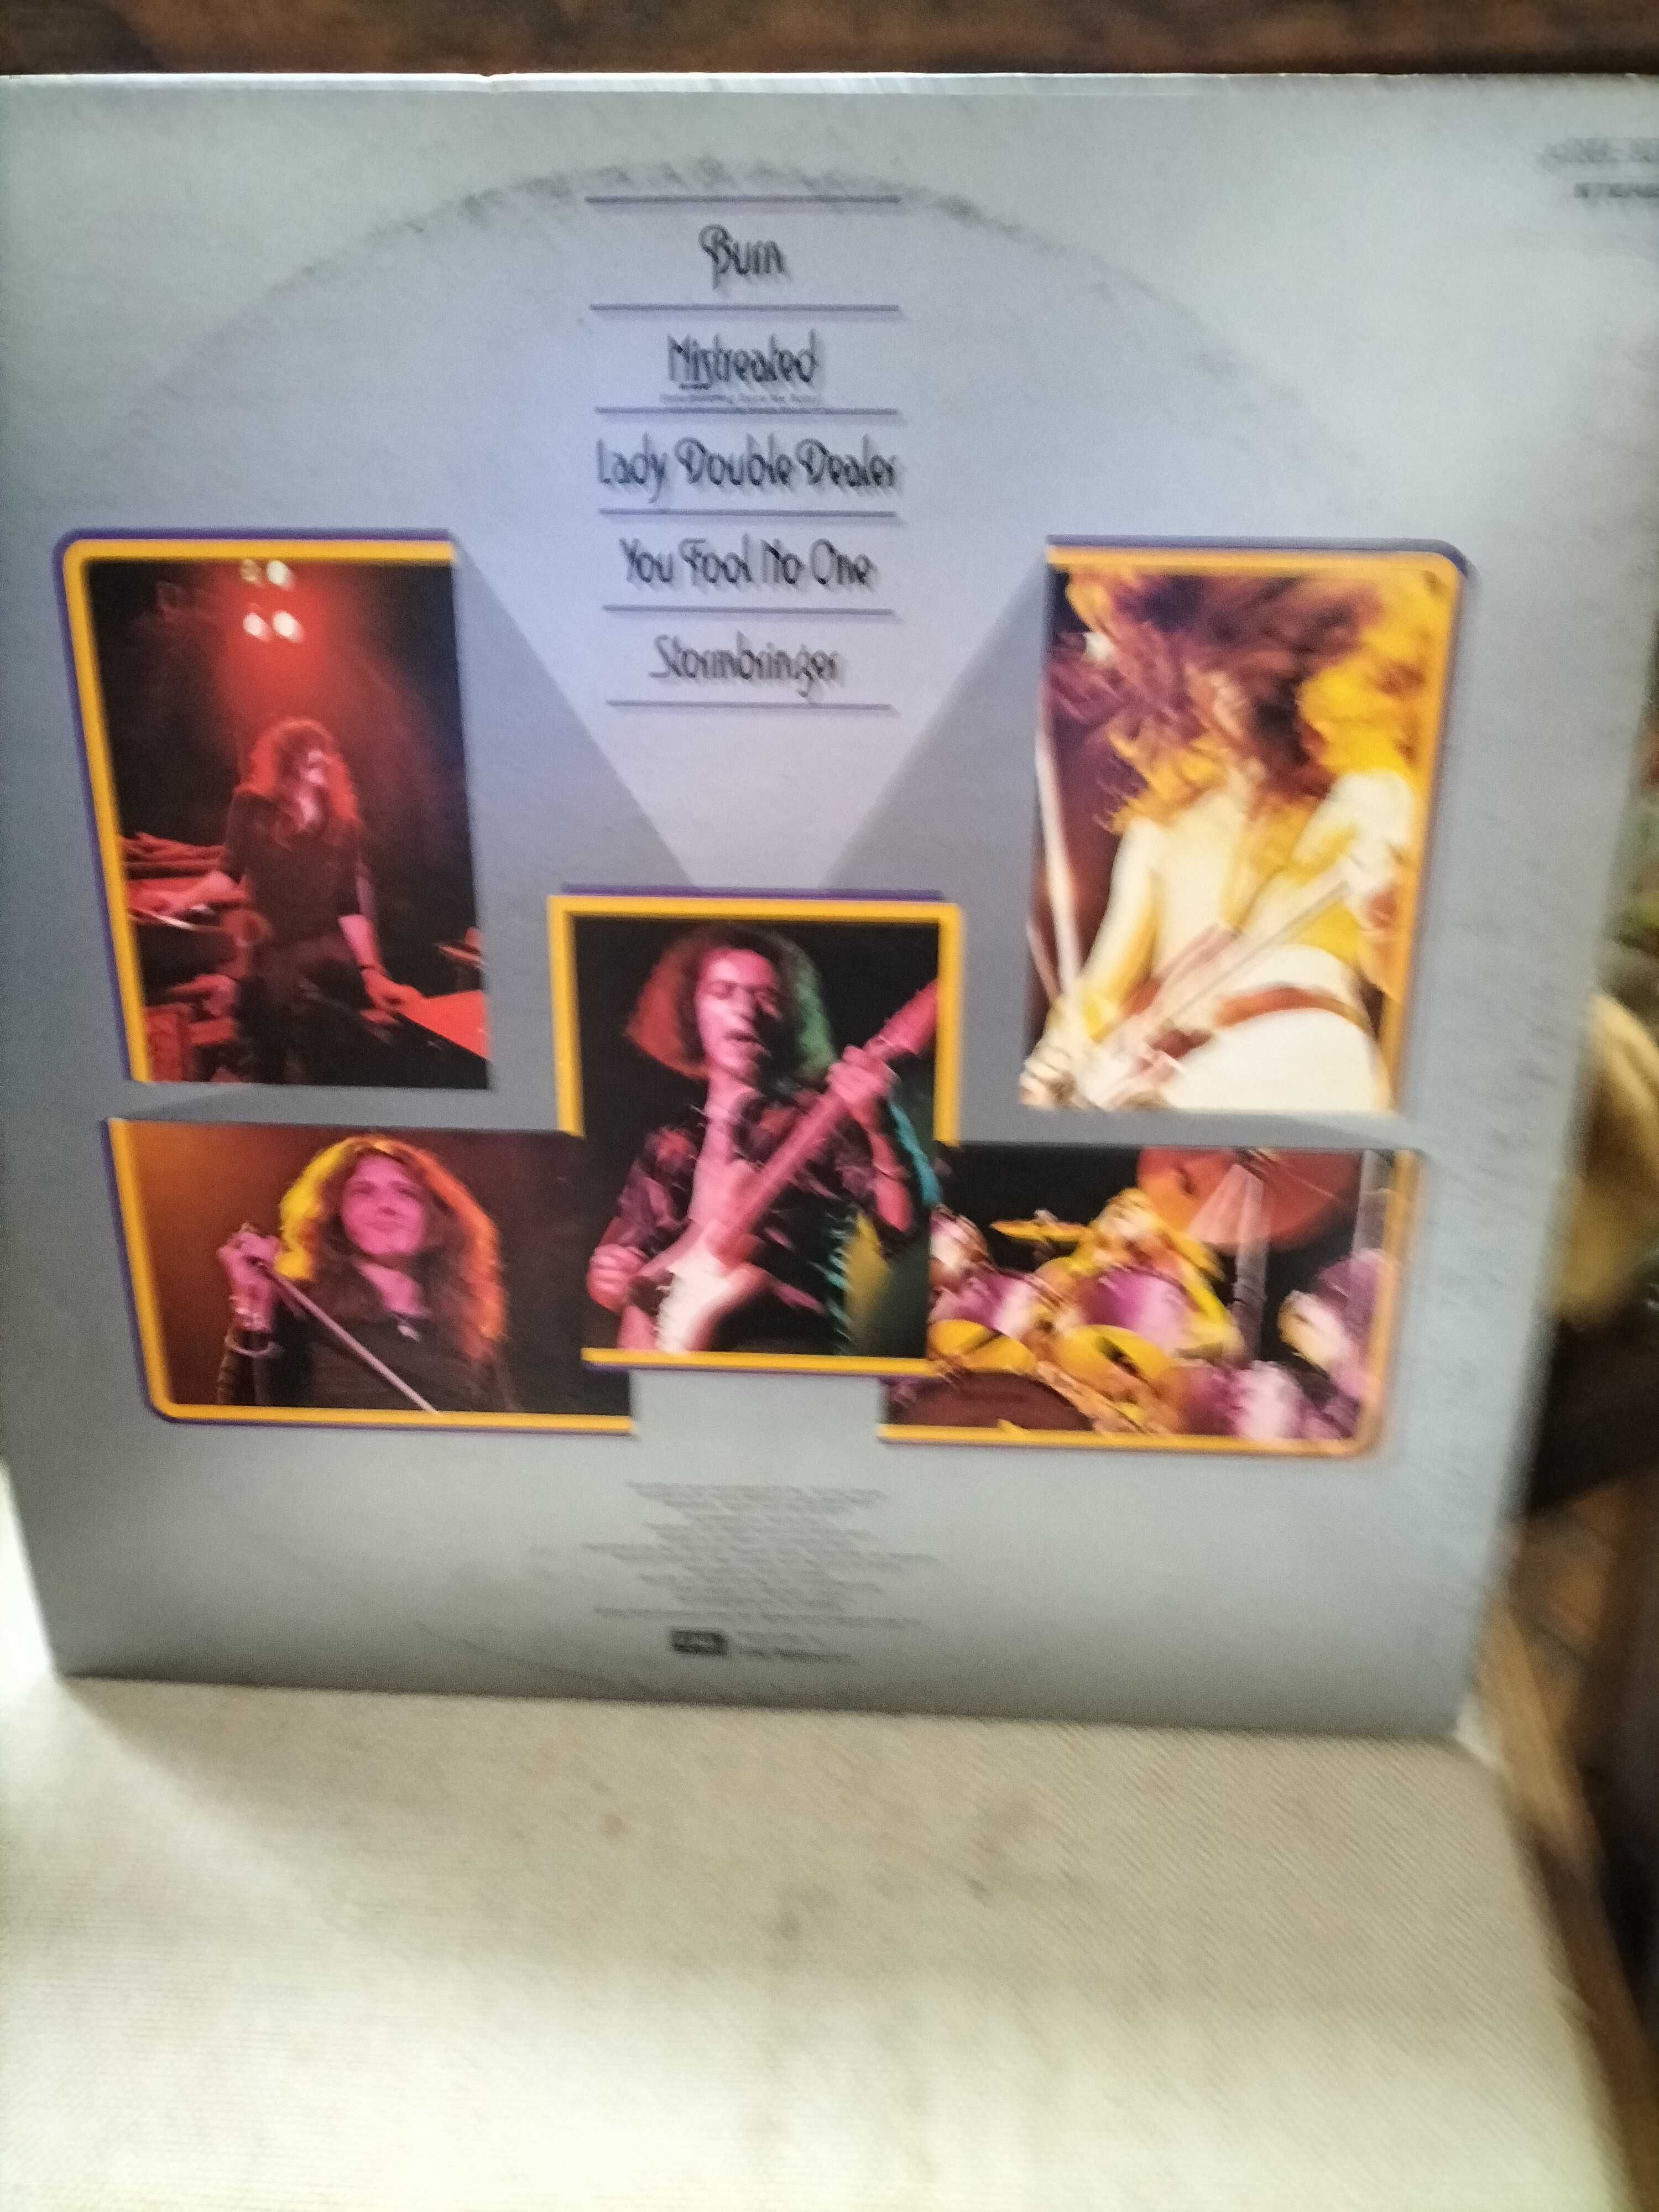 Winyl Deep Purple  " Made in Europe  "  near mint